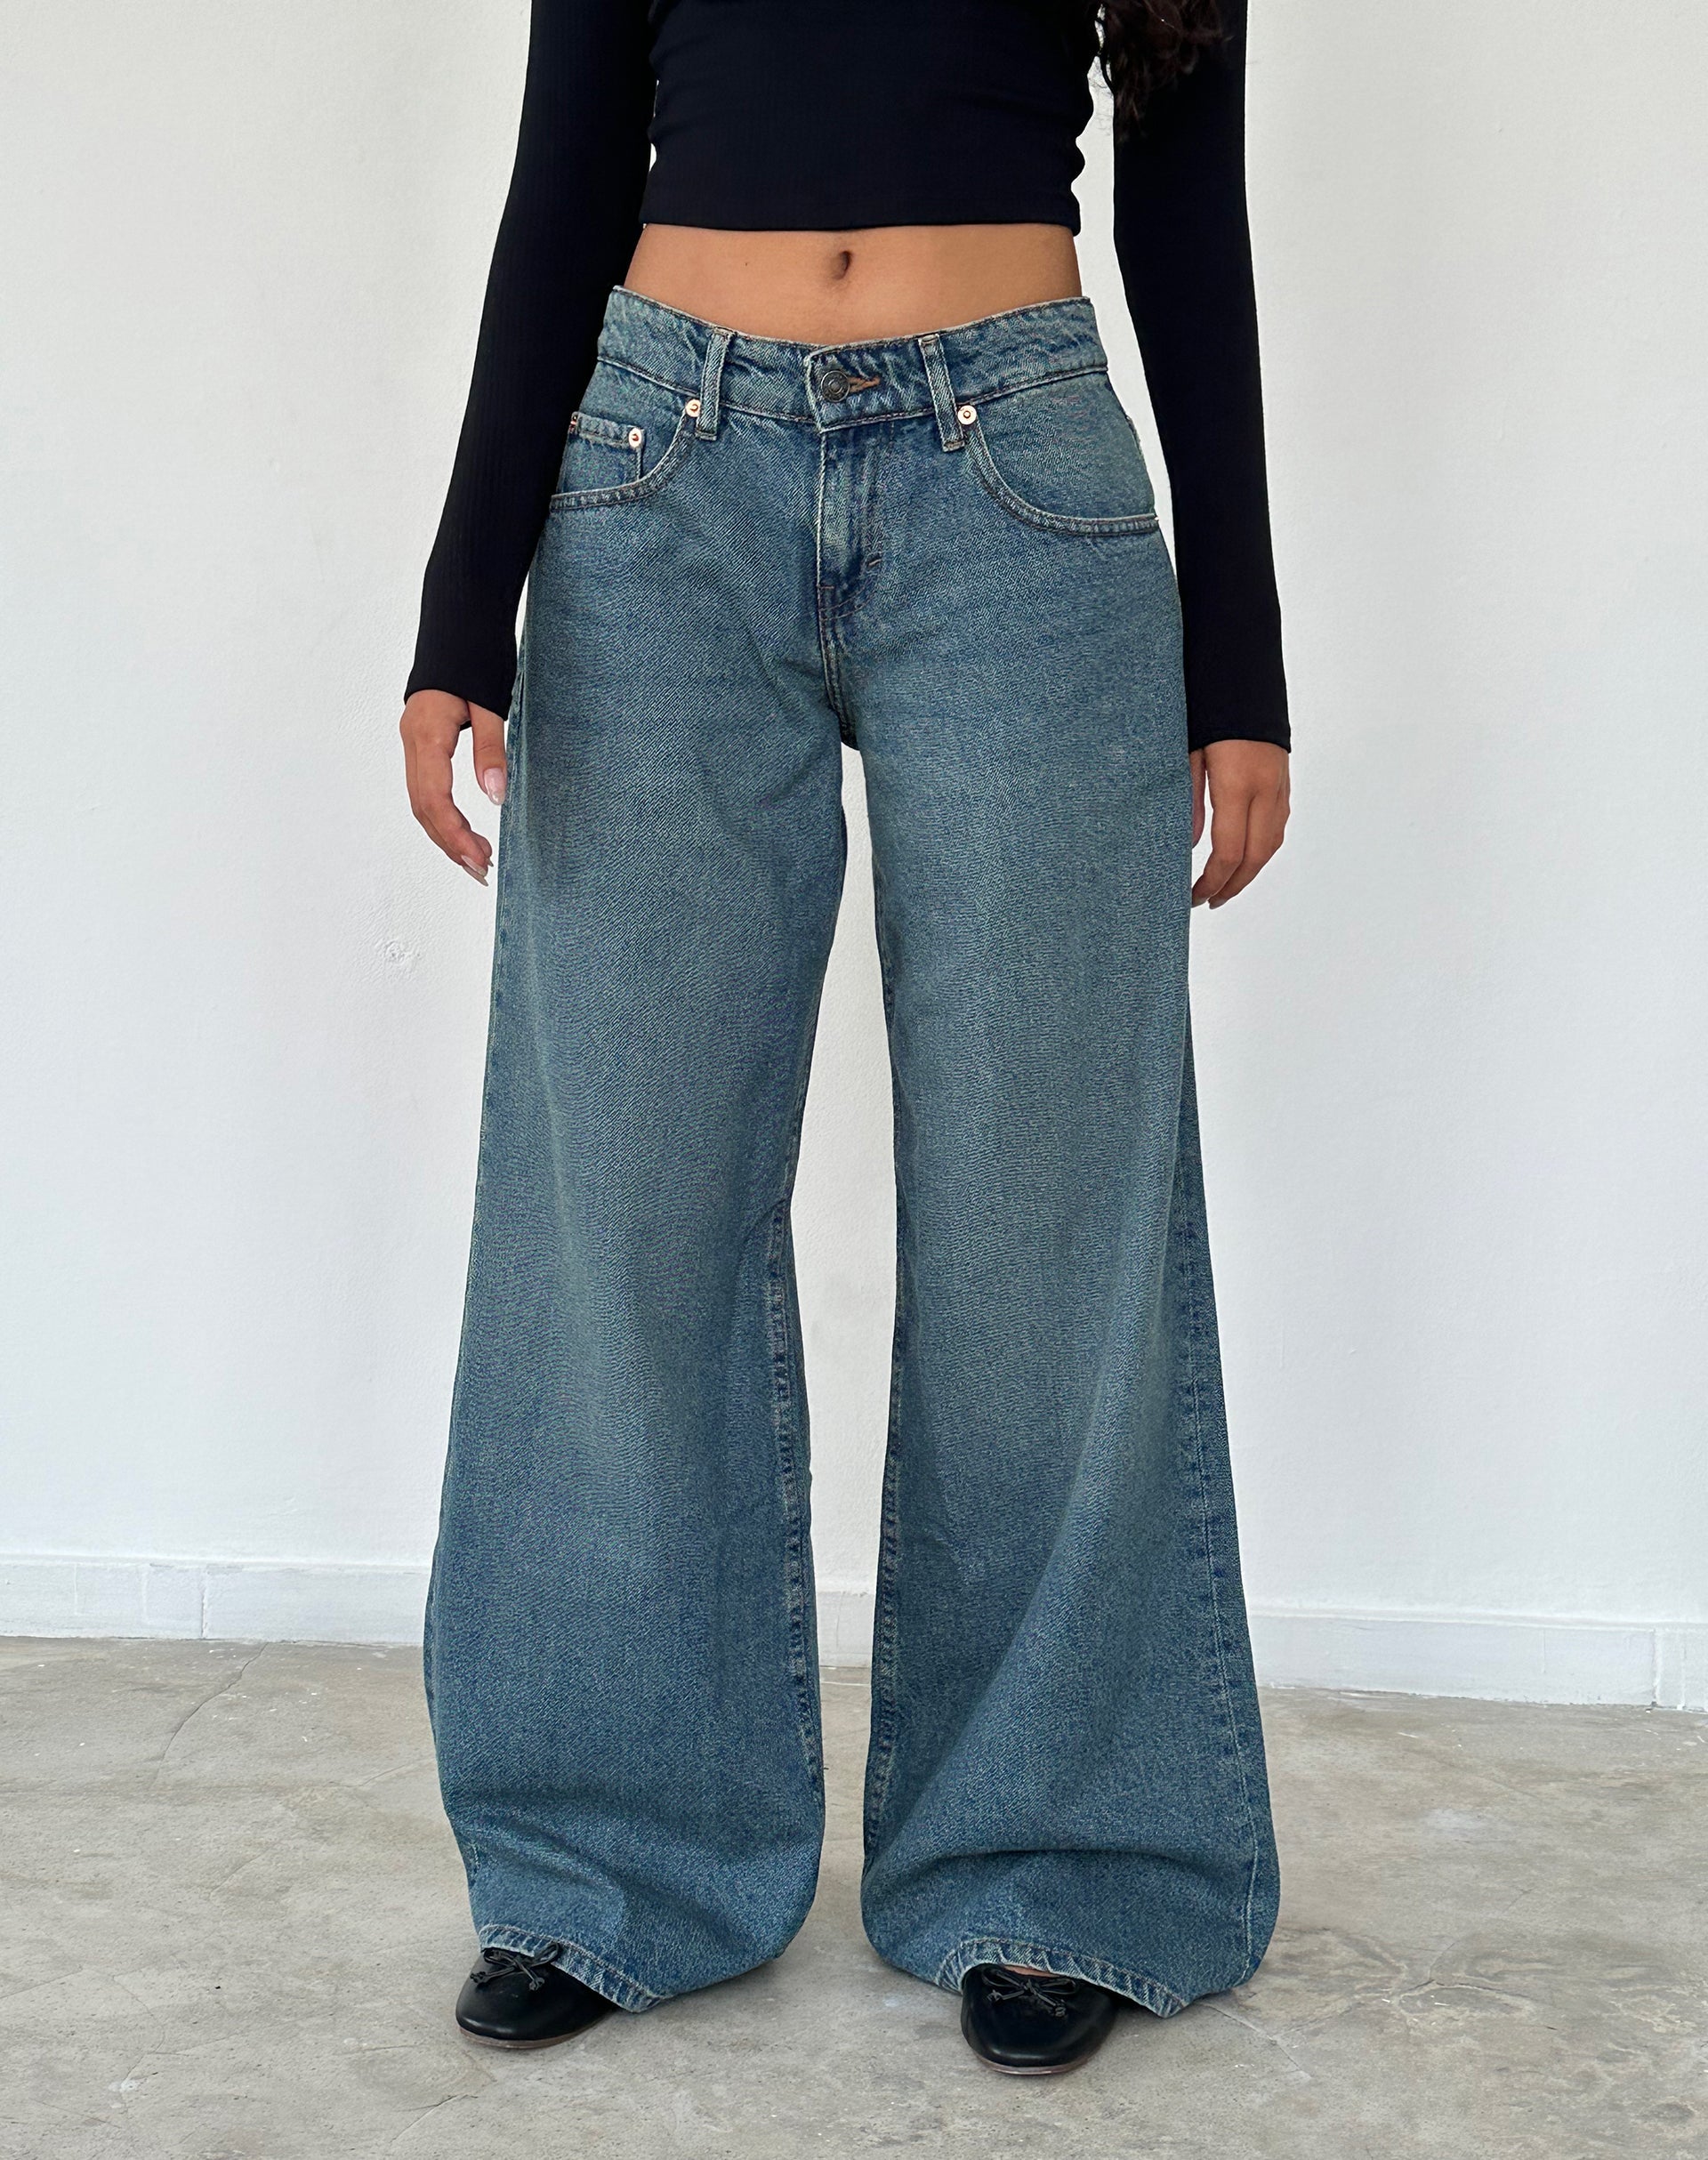 Vintage Black Low Rise Jeans  Parallel – motelrocks-com-aus